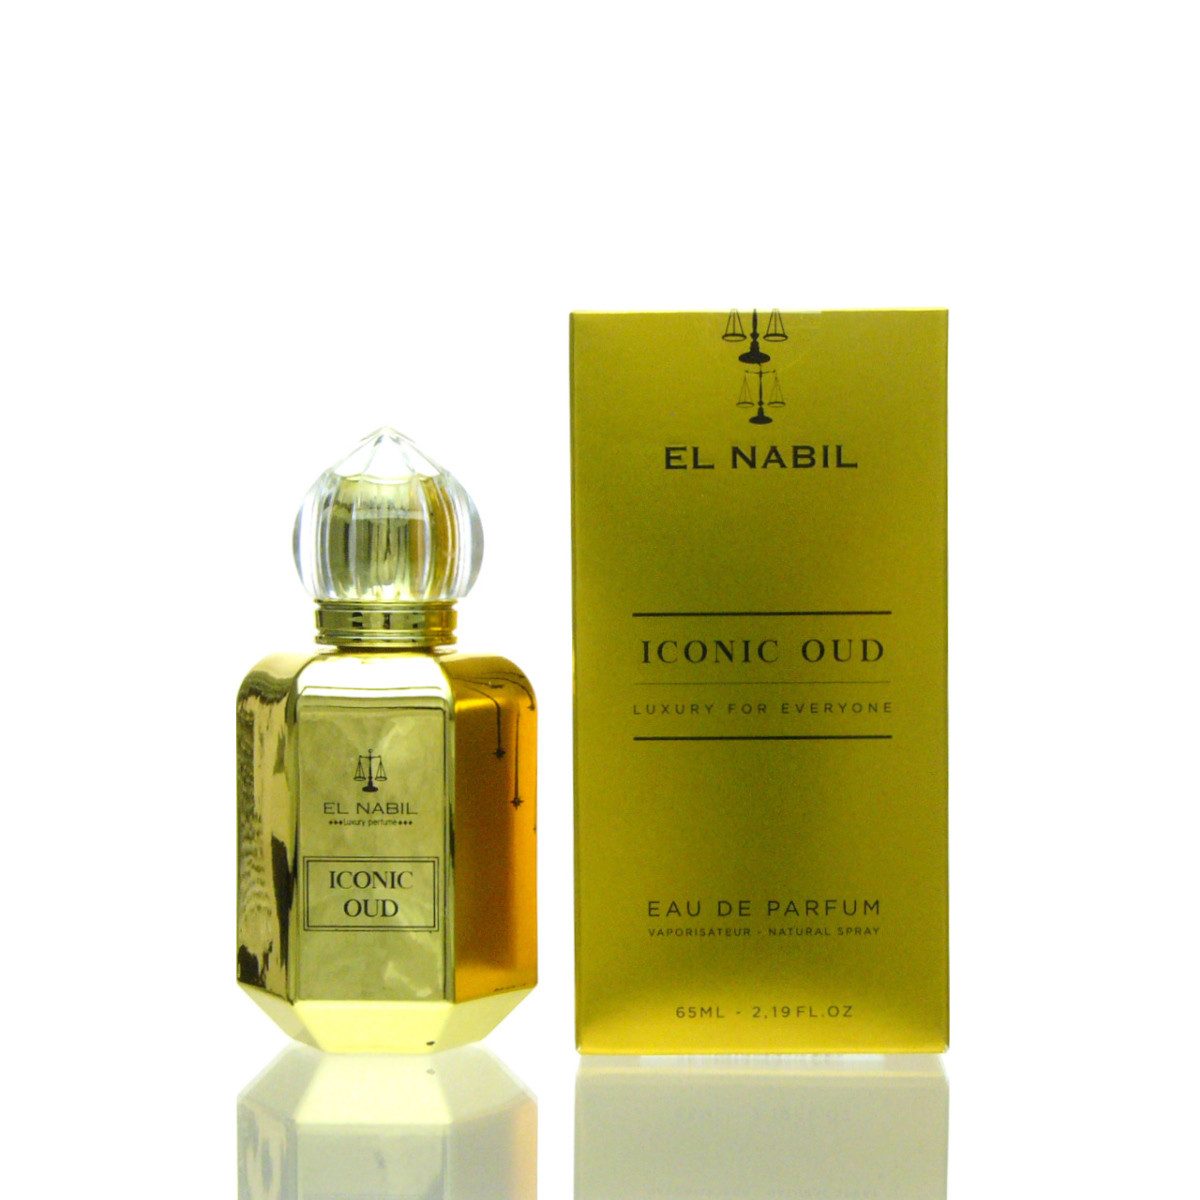 El Nabil Eau de Parfum El Nabil Iconic Oud Eau de Parfum 65 ml